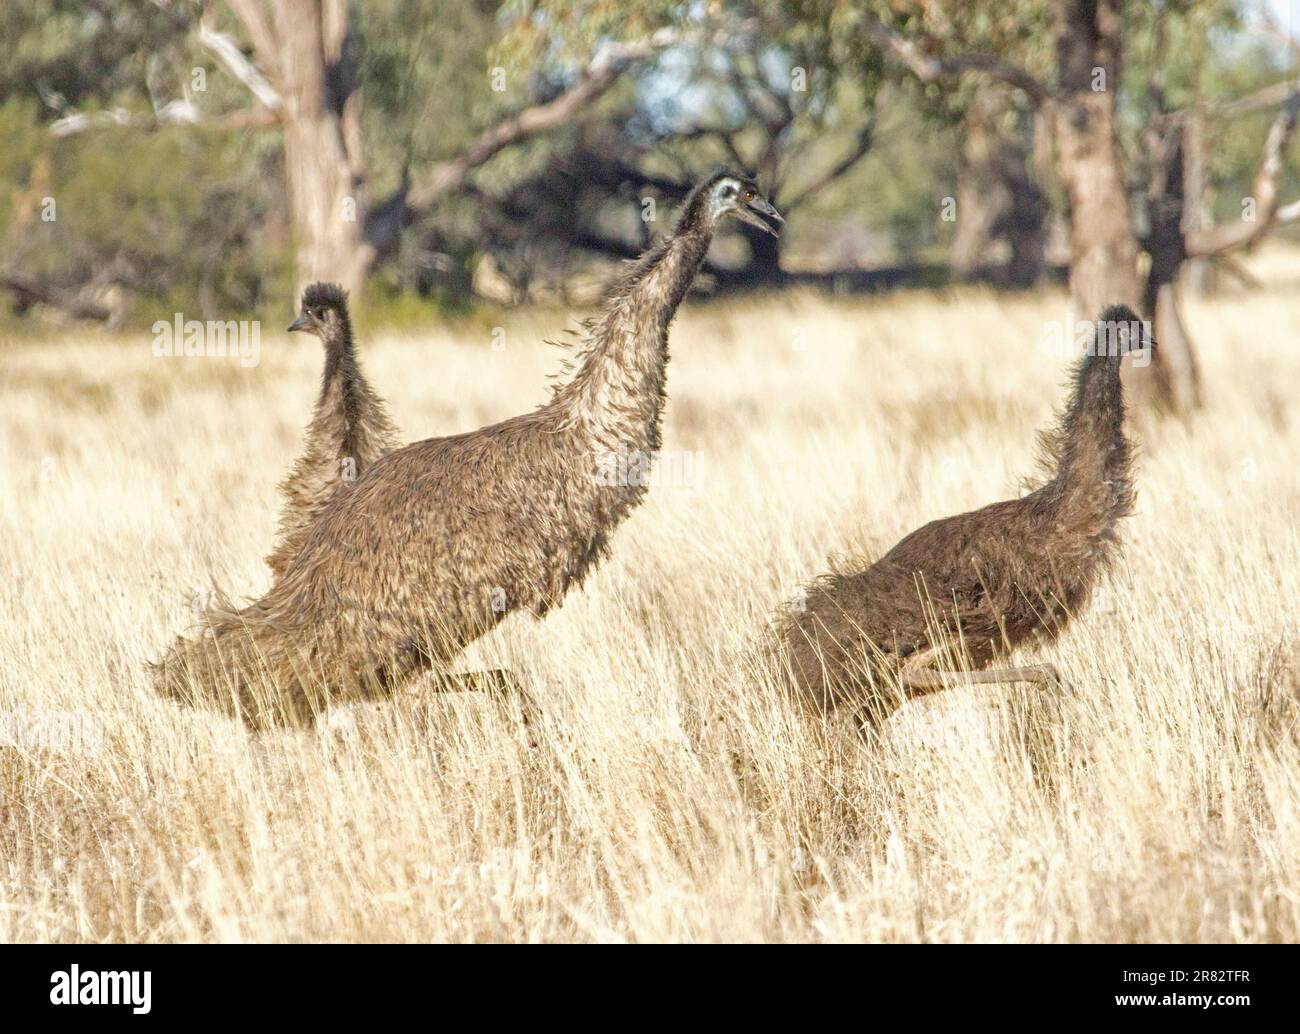 Männliche emu, Dromaius novaehollandiae, zeigt Aggression gegen eine von zwei großen Küken, zwischen langen trockenen Gräsern im Outback NSW Australien Stockfoto